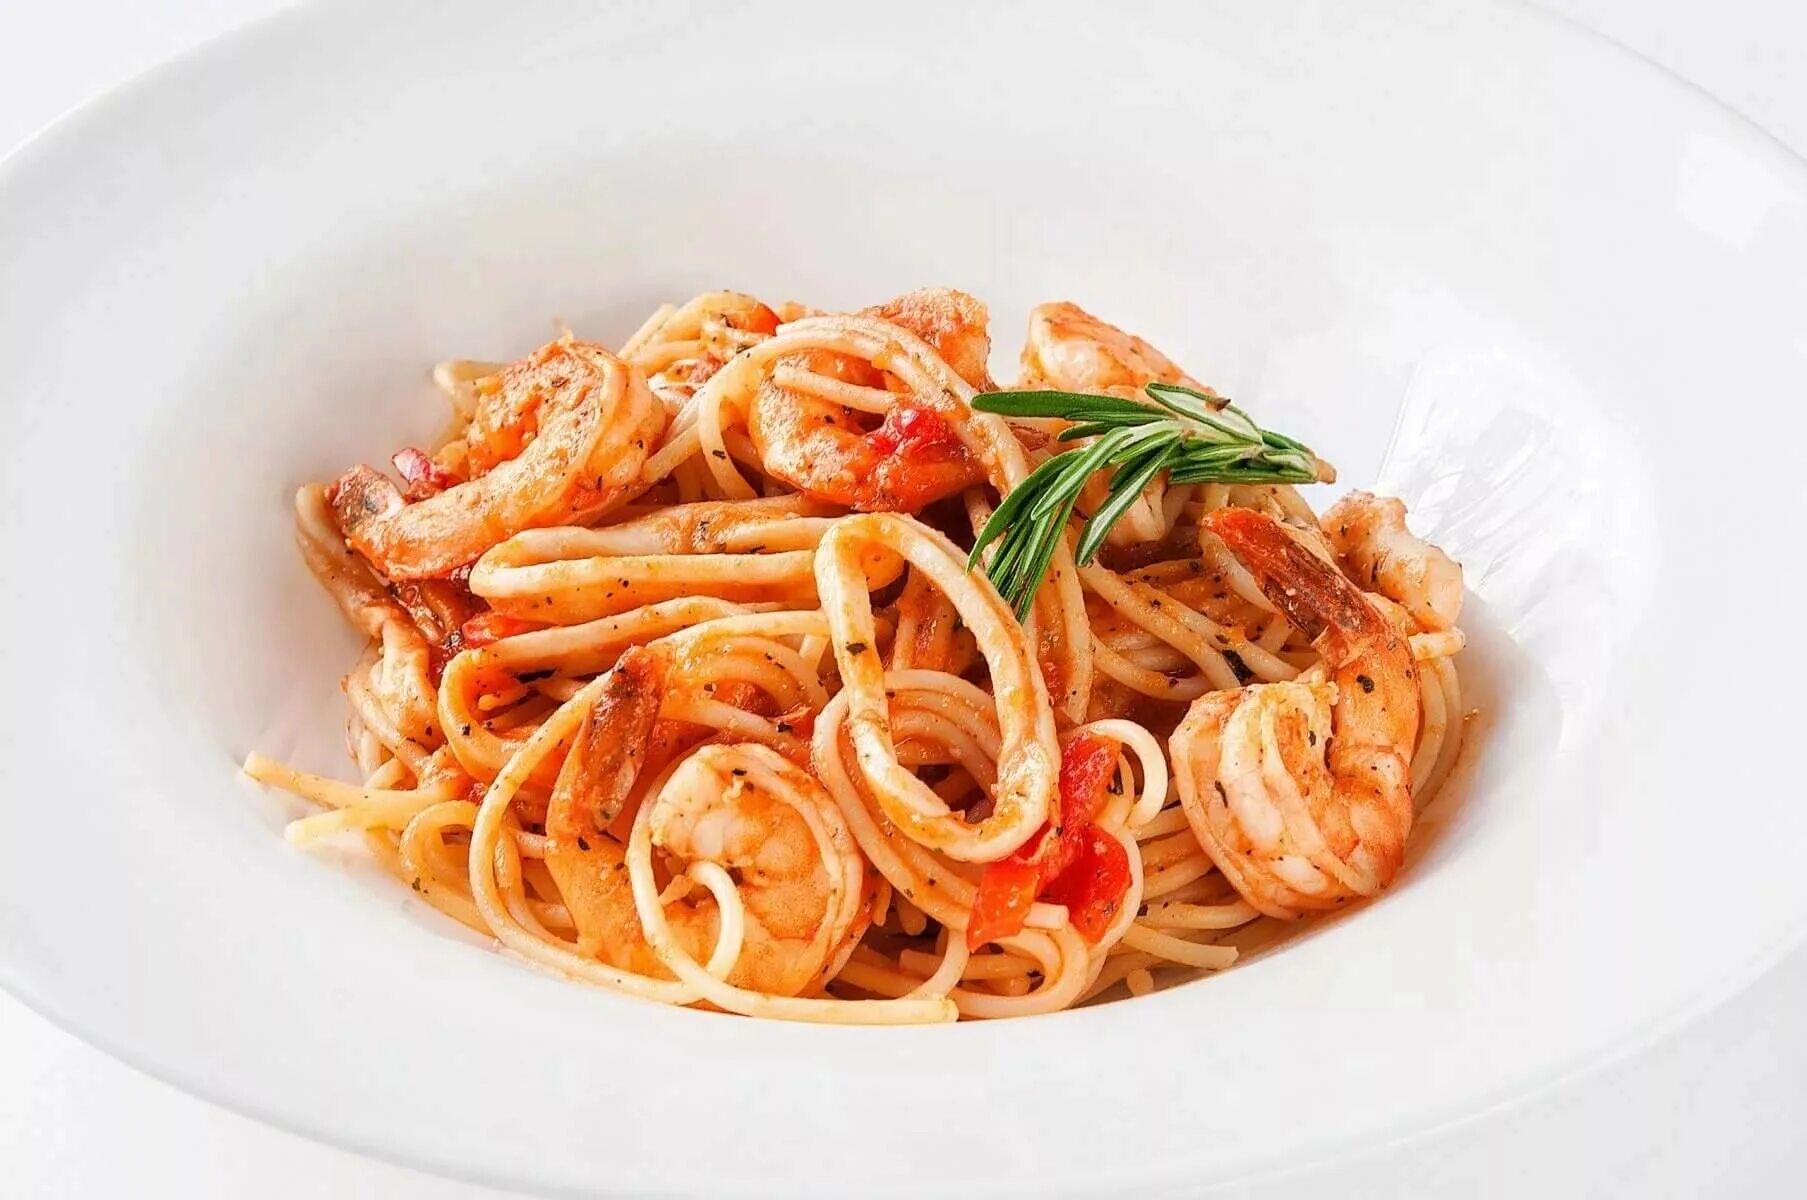 Спагетти Арабьята. Лингвини Арабьята. Паста с кальмарами. Спагетти маринара с морепродуктами.